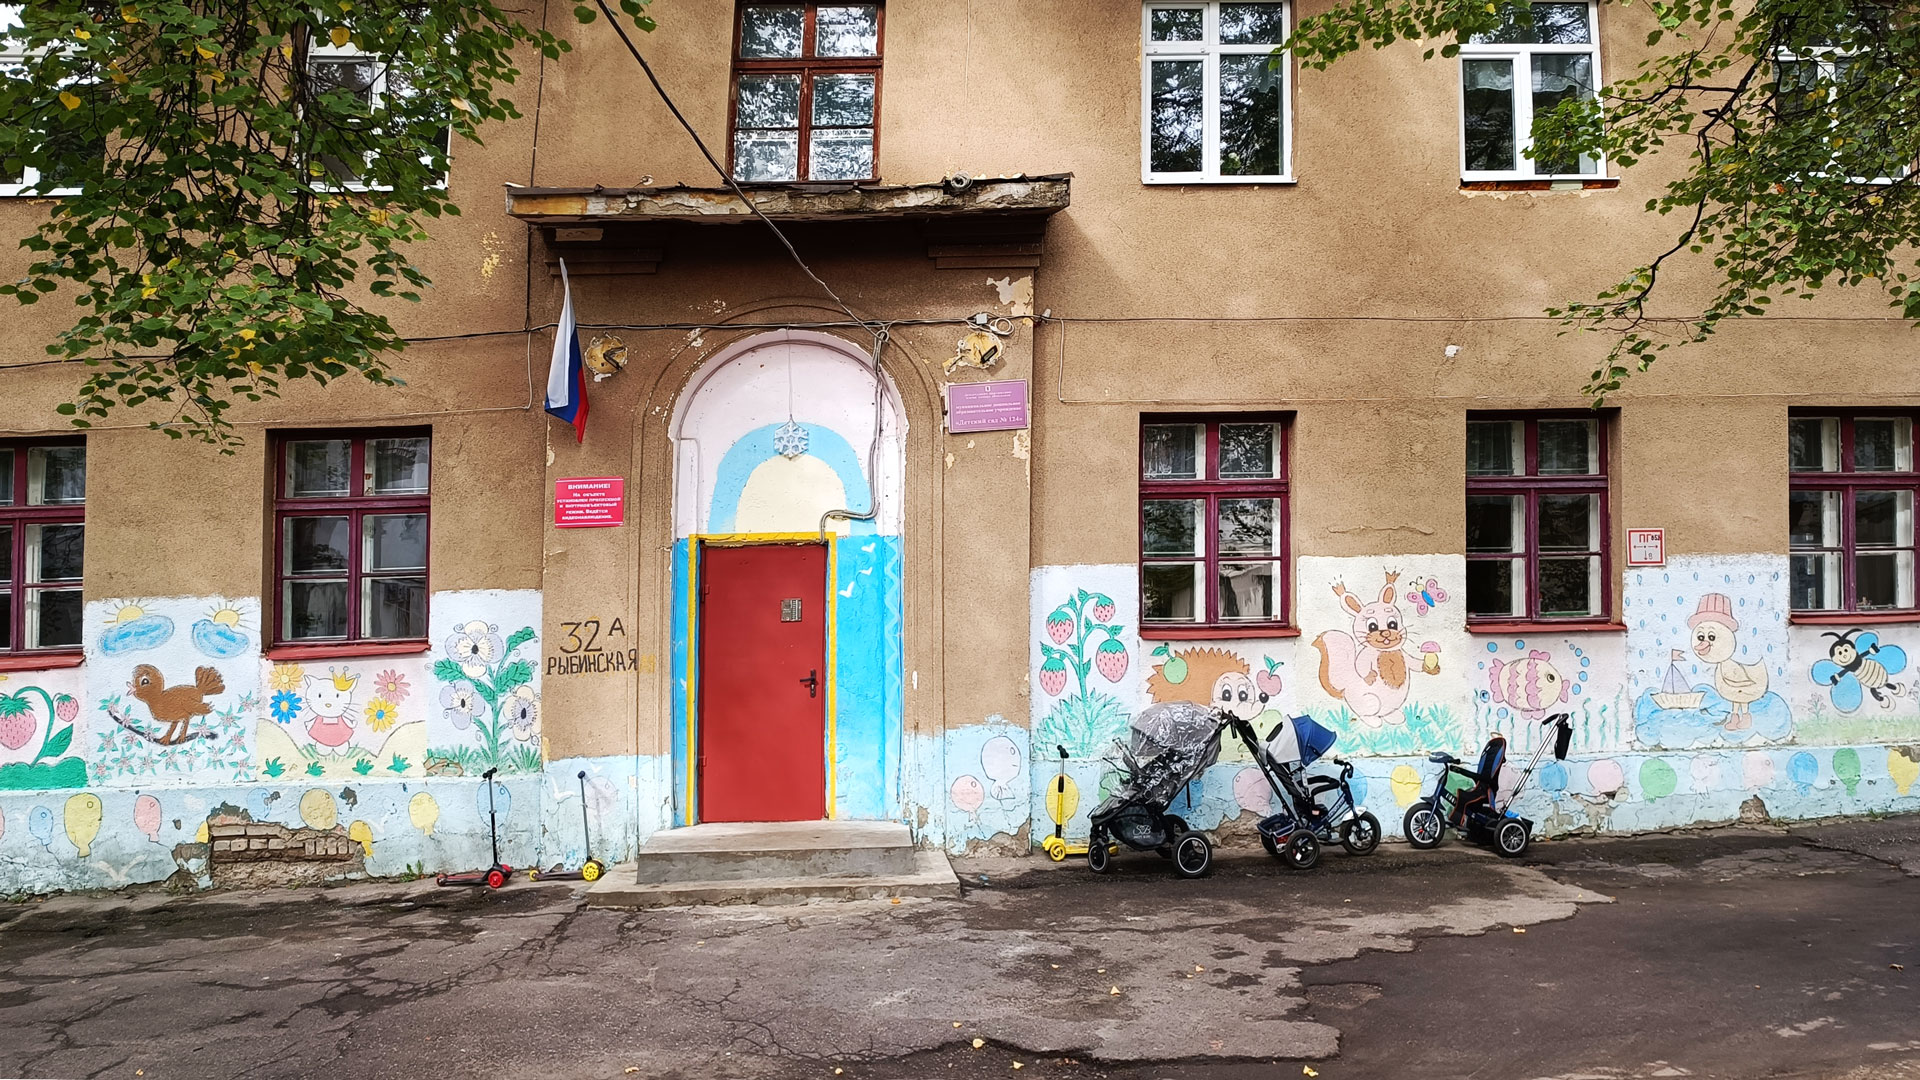 Детский сад 124 Ярославль: общий вид здания.